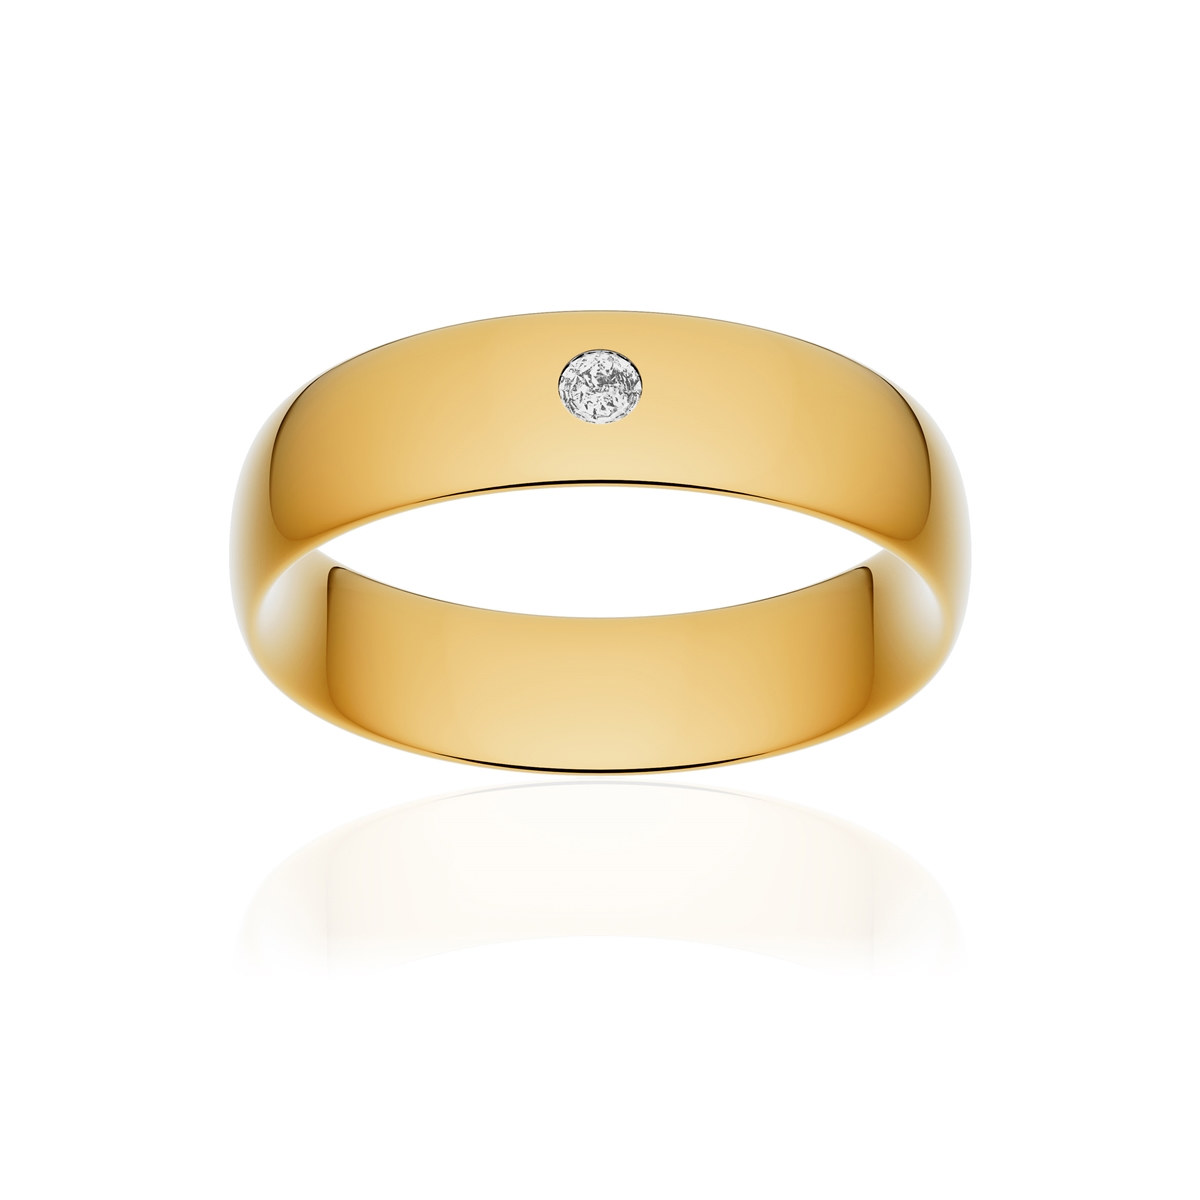 Alliance or 750 jaune poli demi-jonc confort 6mm diamant brillant